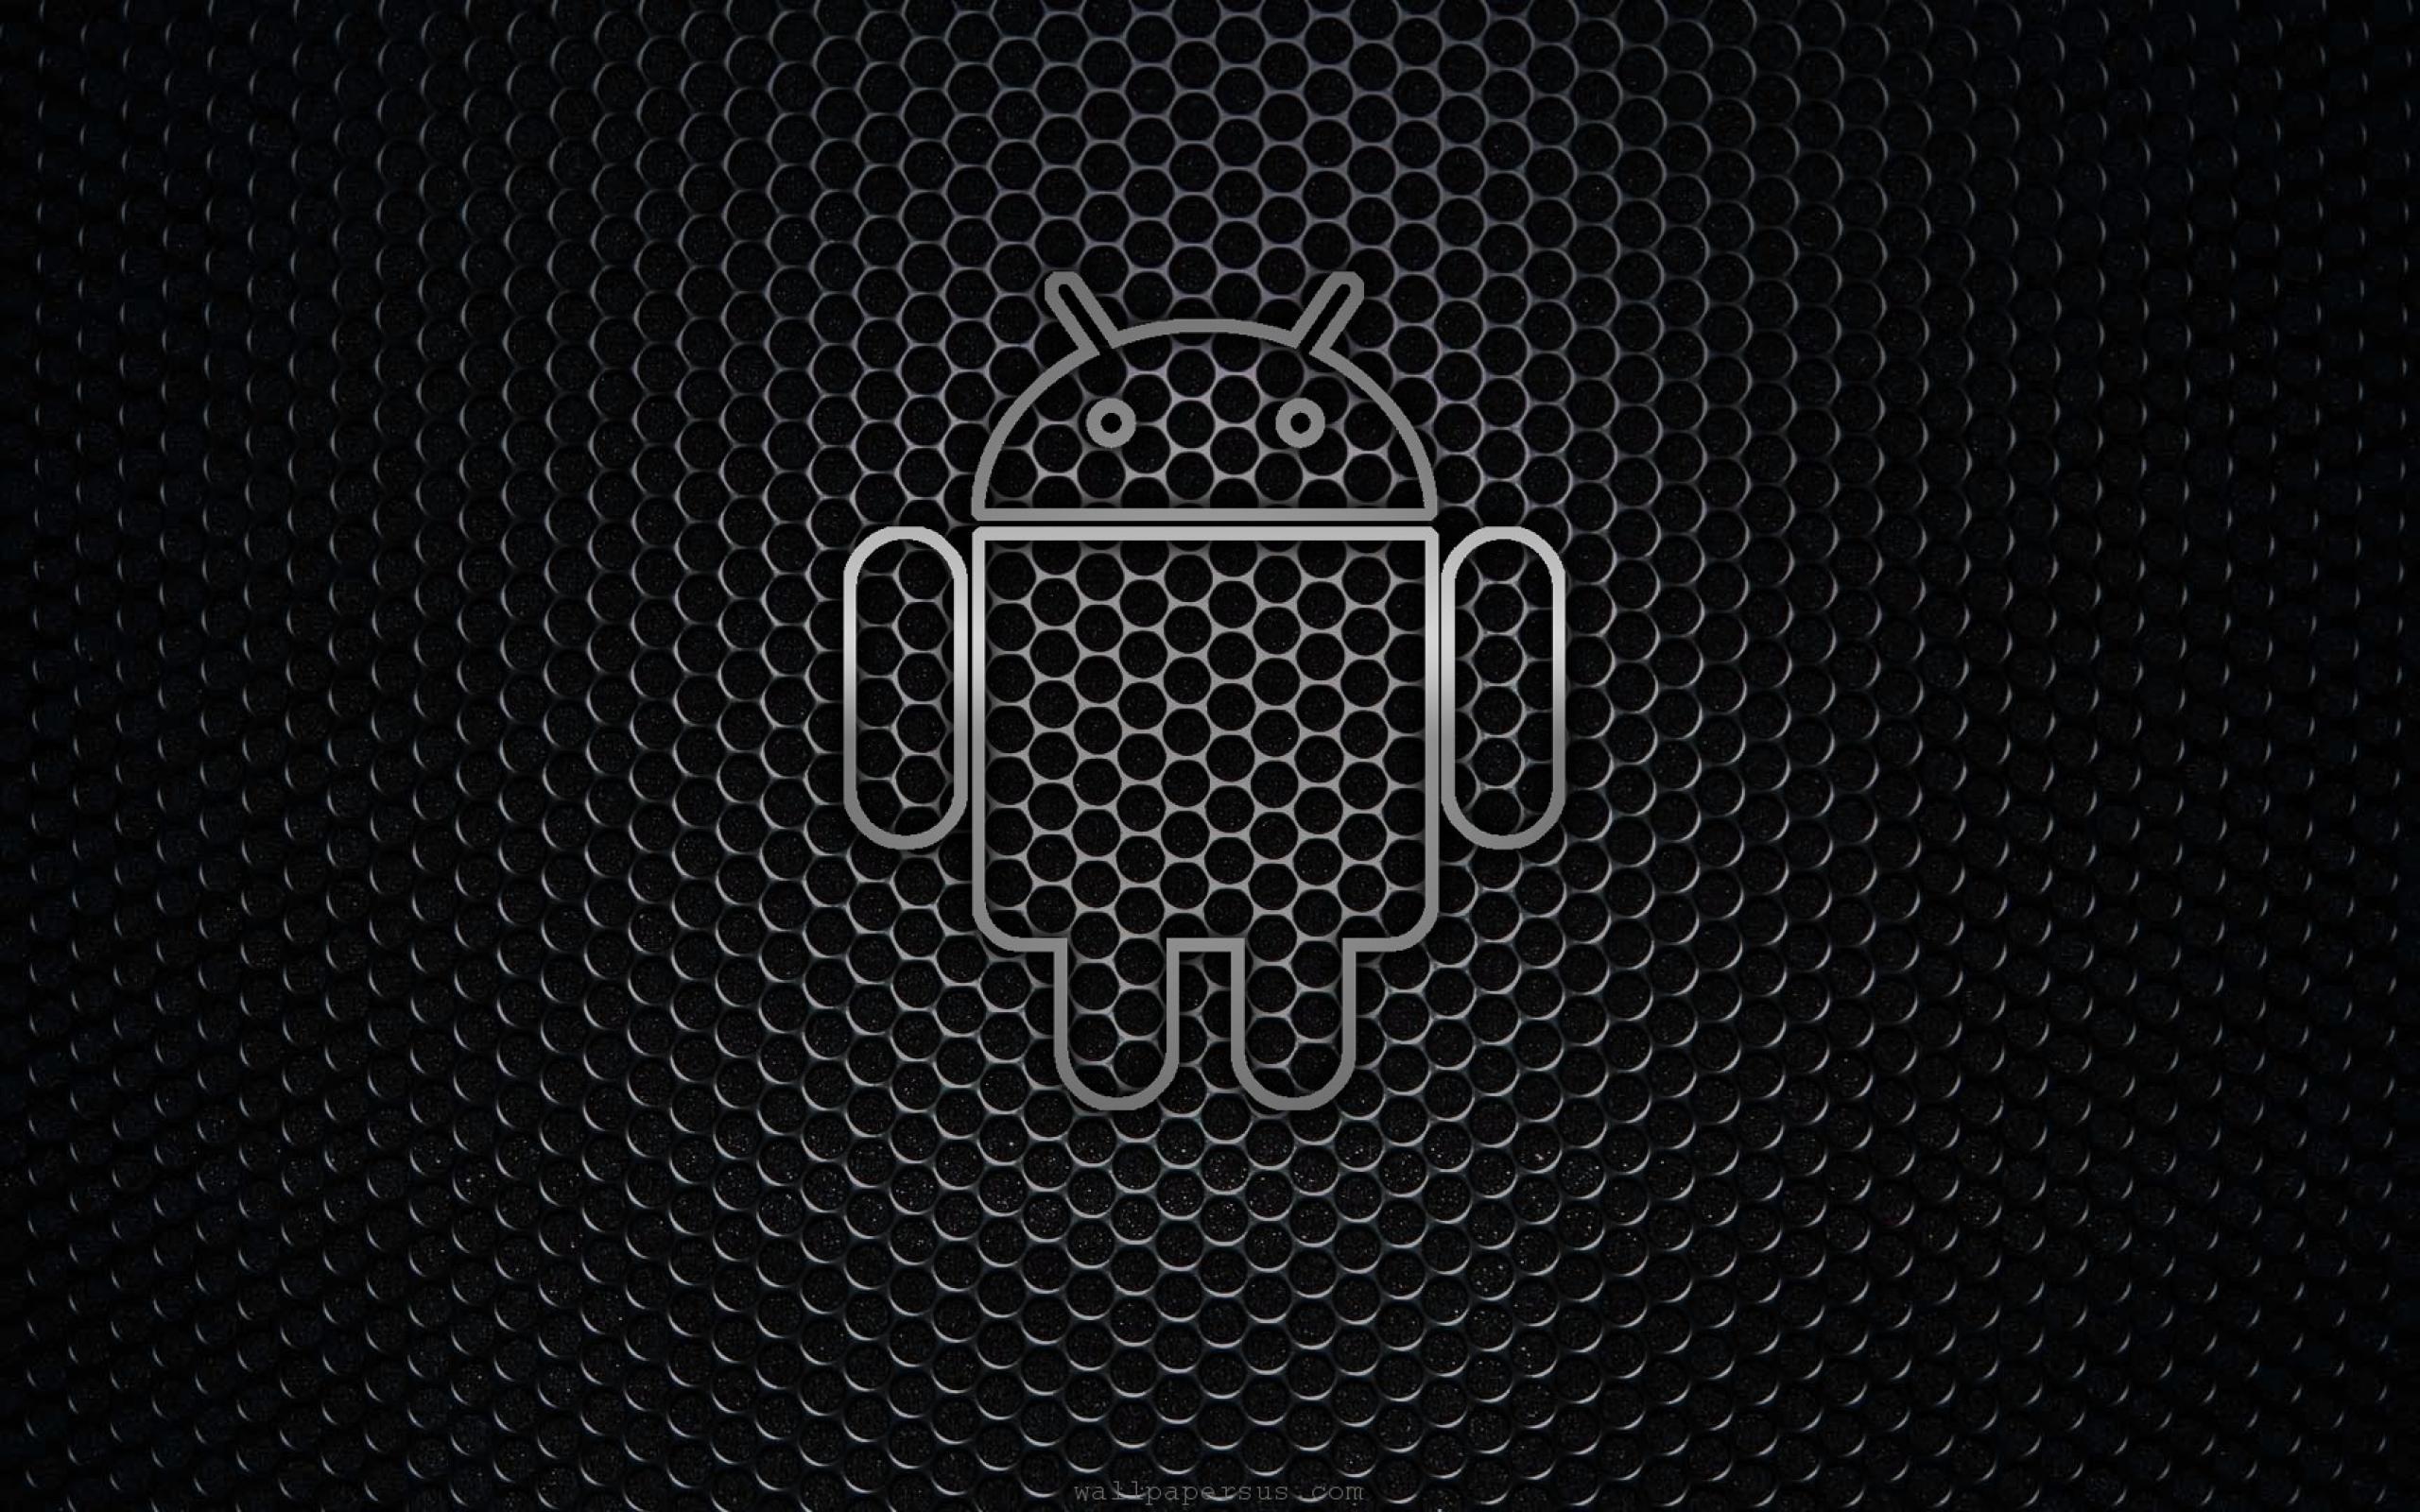 72+] Android Dark Wallpaper - WallpaperSafari